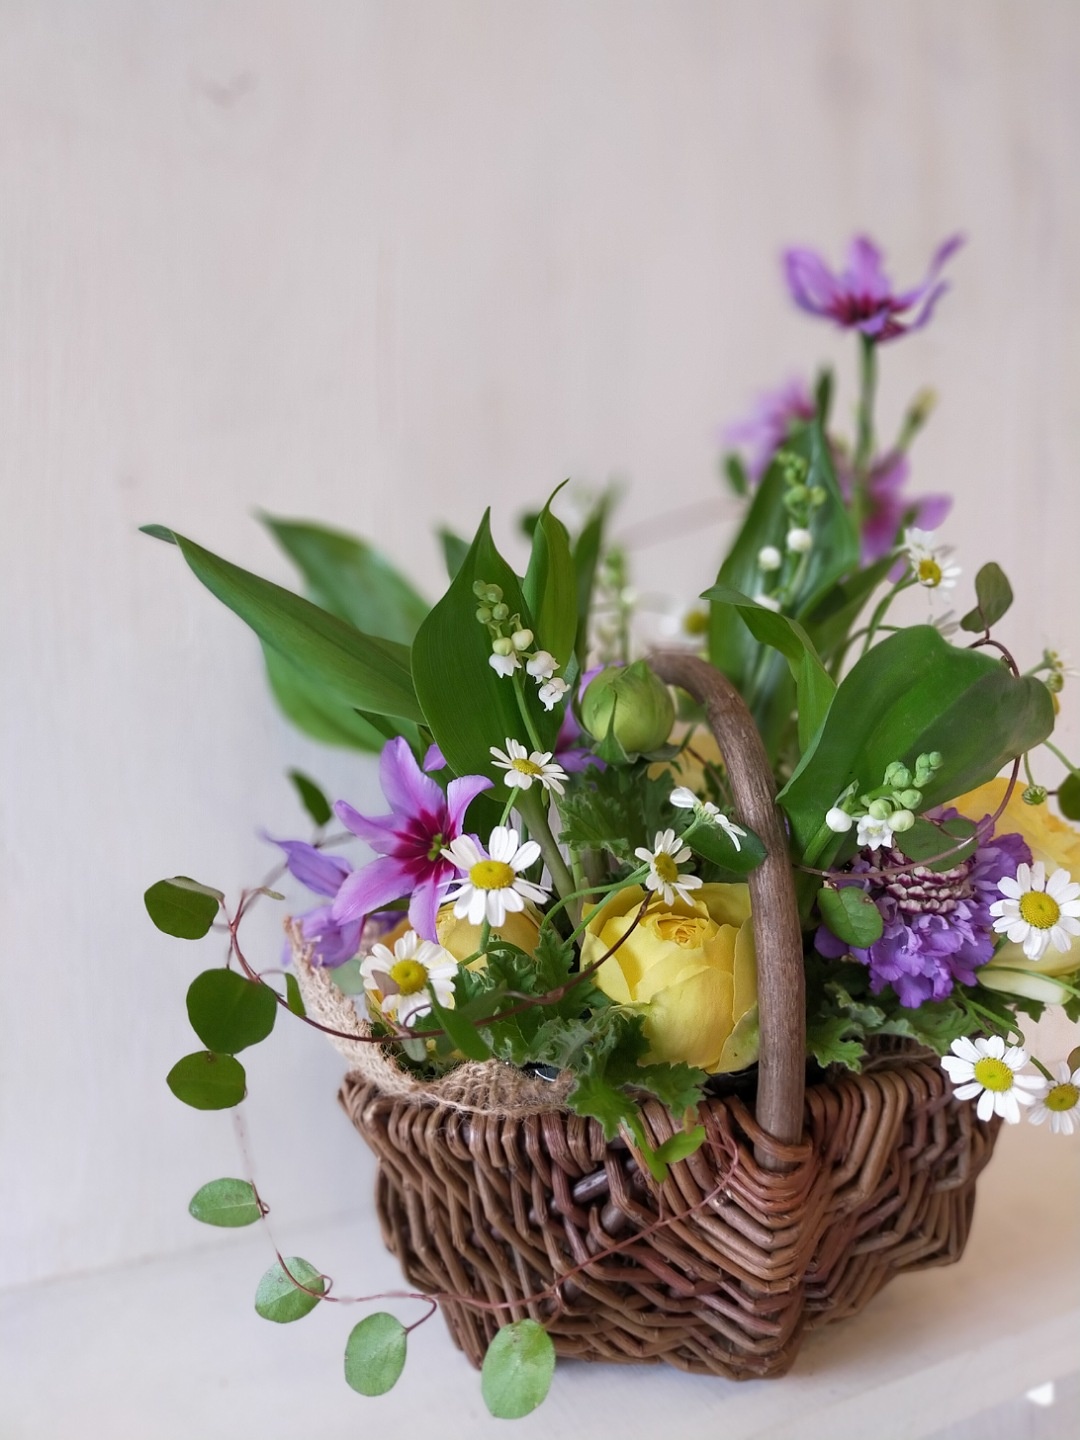 スズランと香る花たちのアレンジメントの写真2枚目